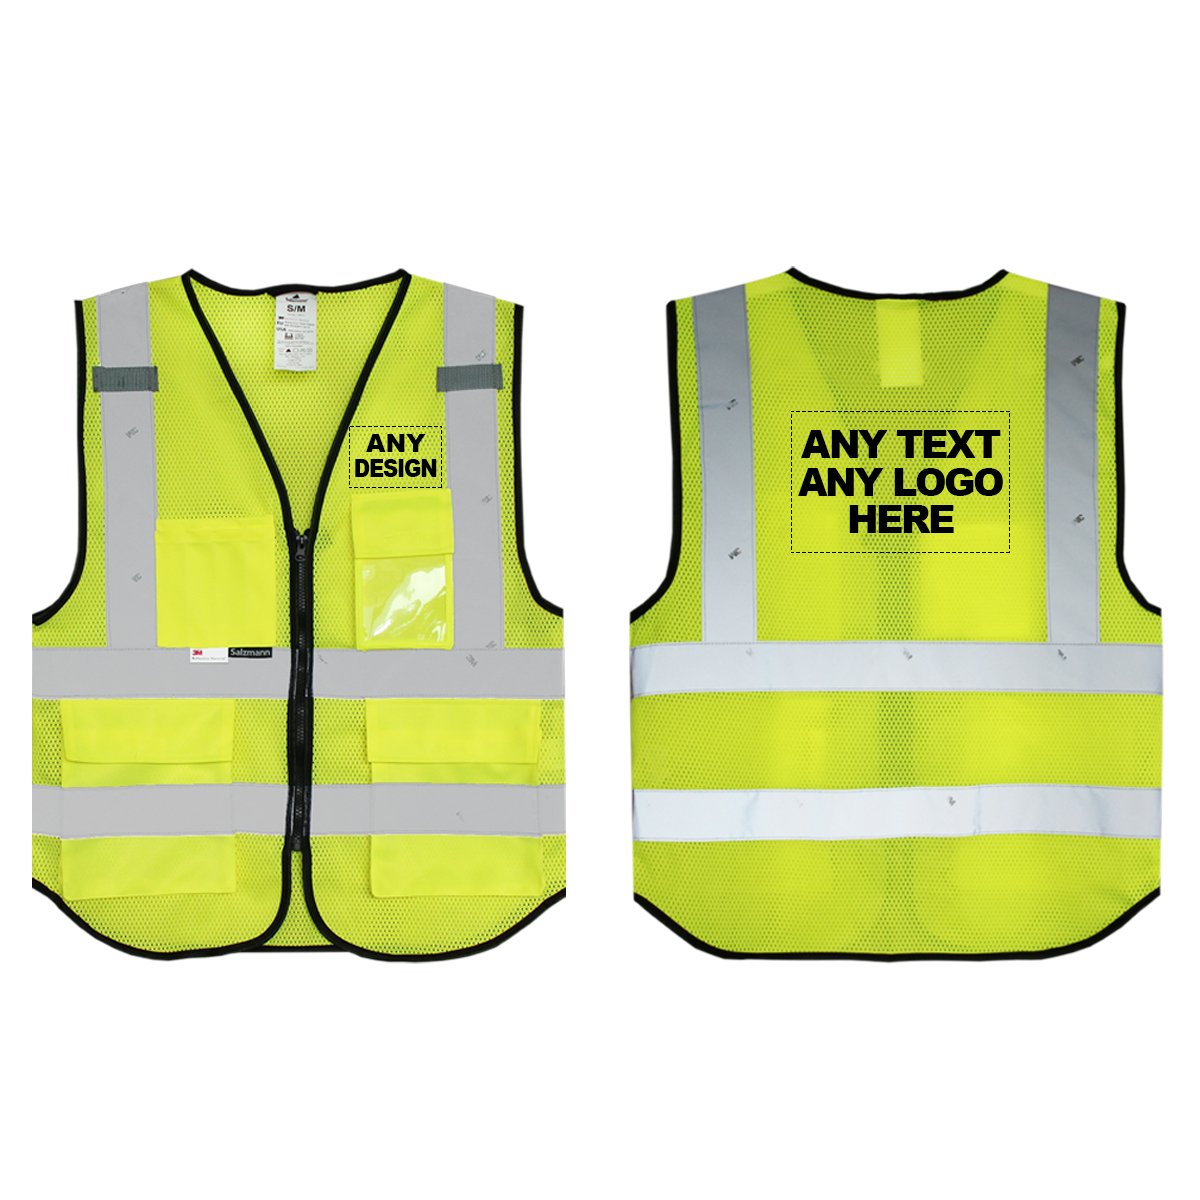 LED Safety Vest For Bike & Two-Wheeler: FREE LED Bike Safety Vest Del.